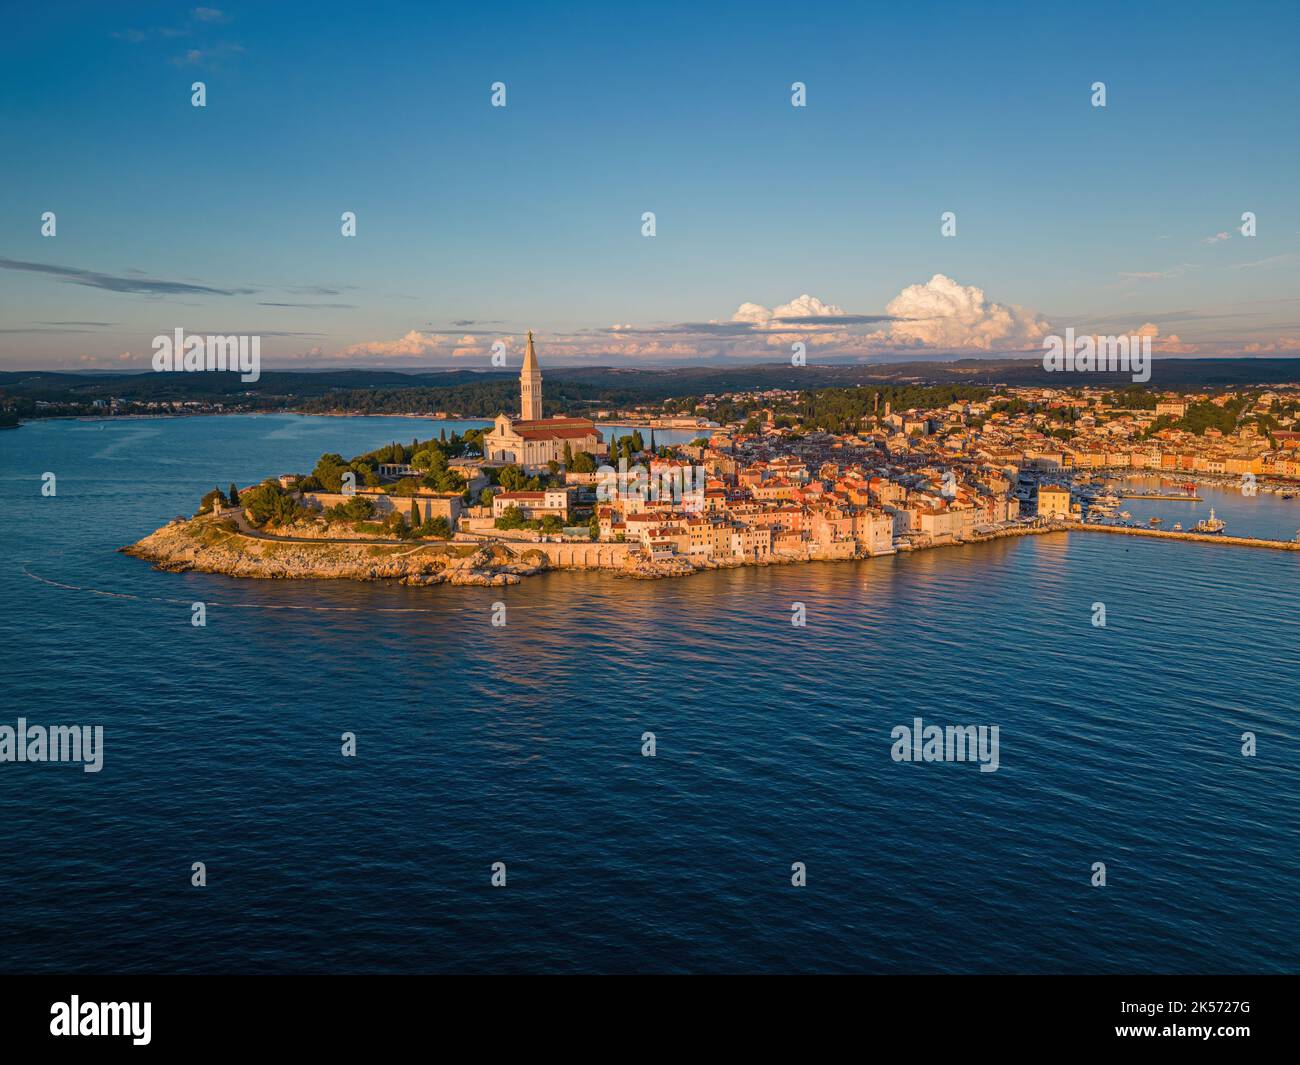 Clocher de l'église Saint-Euphemia dominant la ville de Rovinj entourée par la mer. Banque D'Images